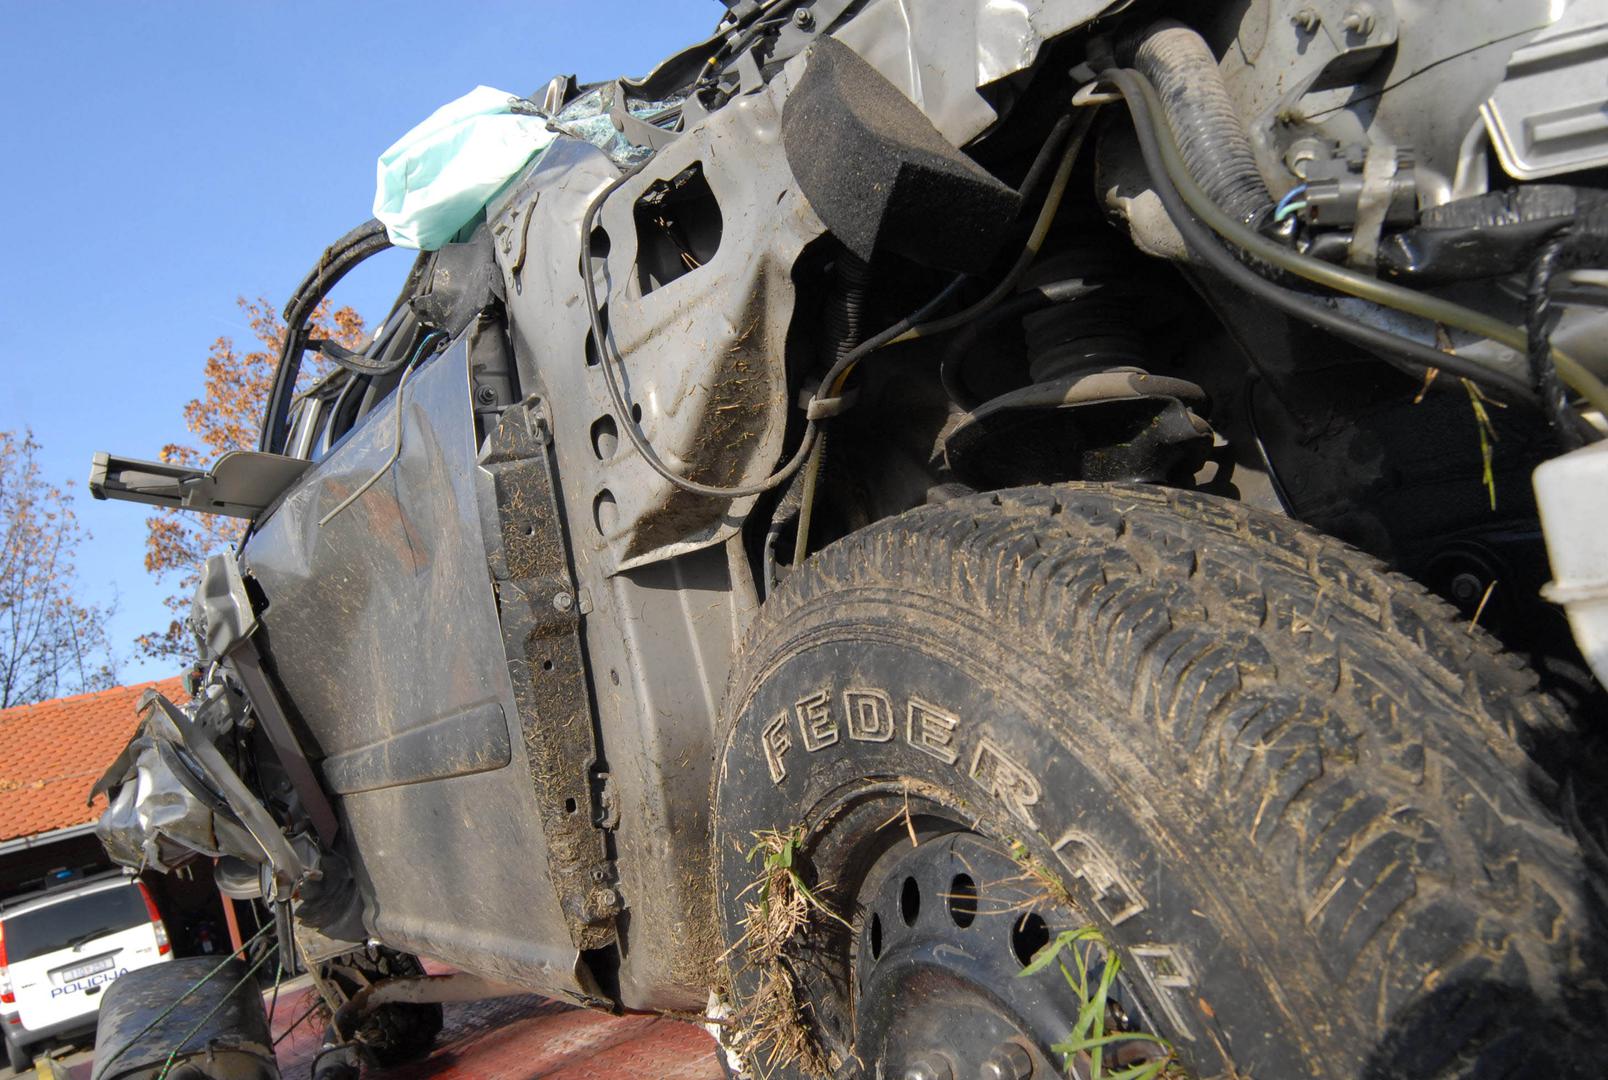 Do nesreće je došlo nakon što je Matavulj, s kojim je 32-godišnja Dolores bila u automobilu marke Nissan, naletio na WV Polo slavonskobrodskih registarskih oznaka zbog nedržanja dovoljnog razmaka. 